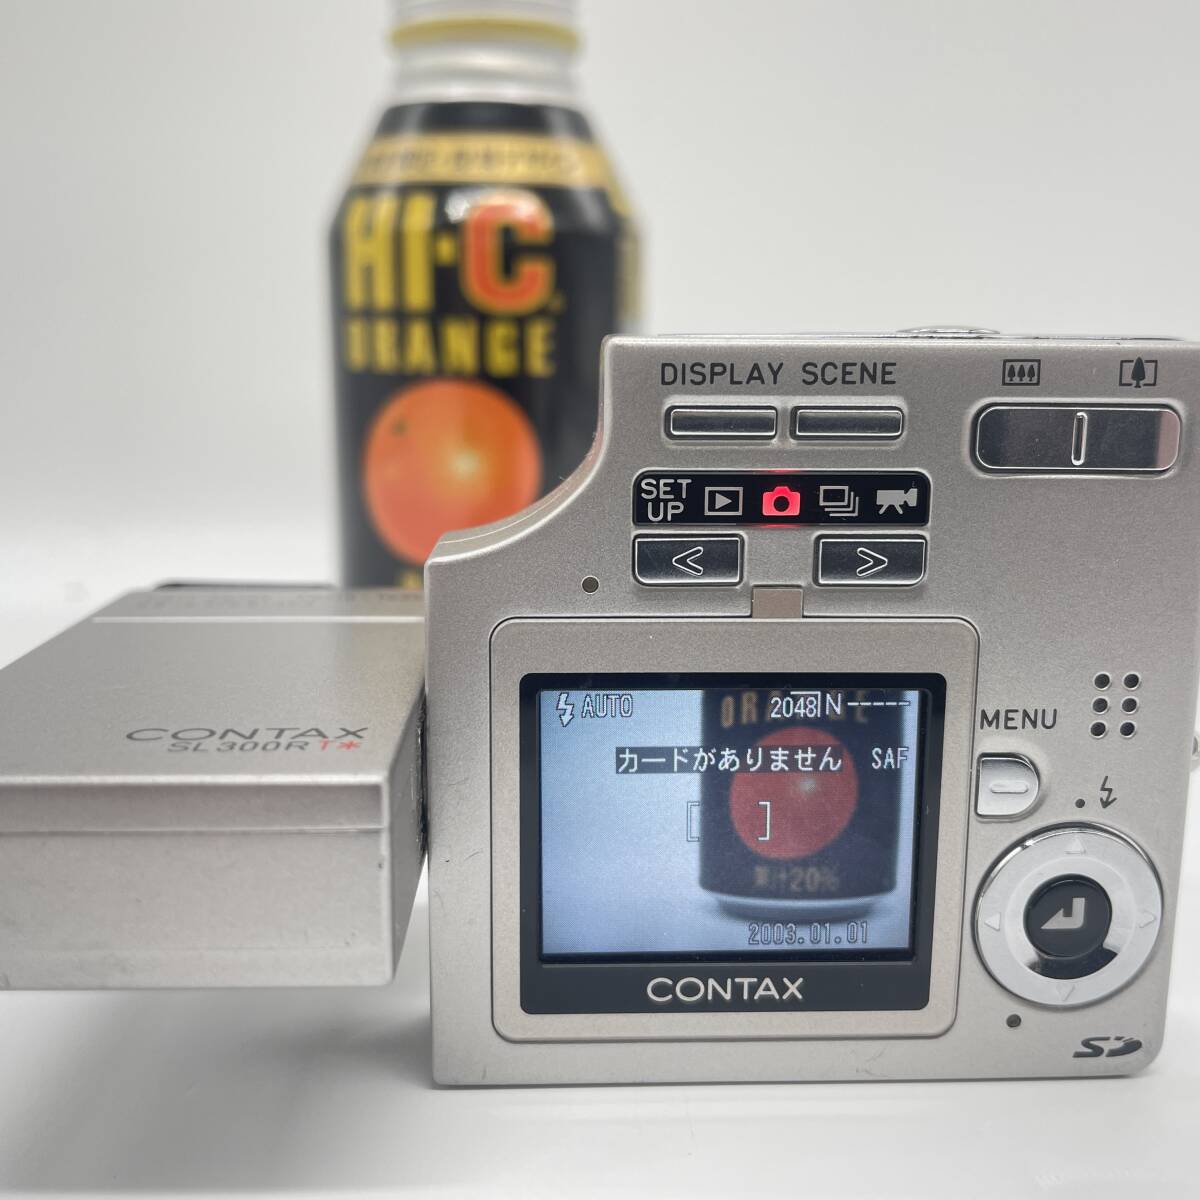 【動作確認済み】CONTAX コンタックス SL300RT コンデジ デジカメ デジタルカメラ シャッター&フラッシュ動作OKの画像5